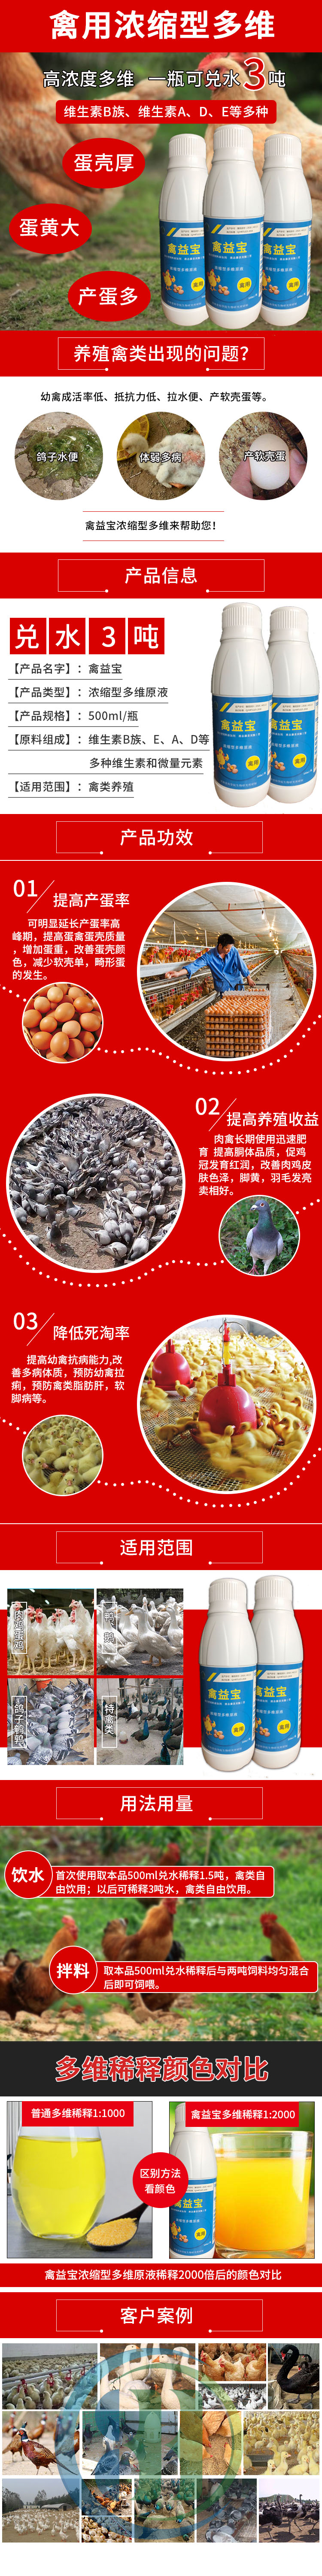 养殖珍珠鸡用禽用多维禽益宝完善体型提高免疫力